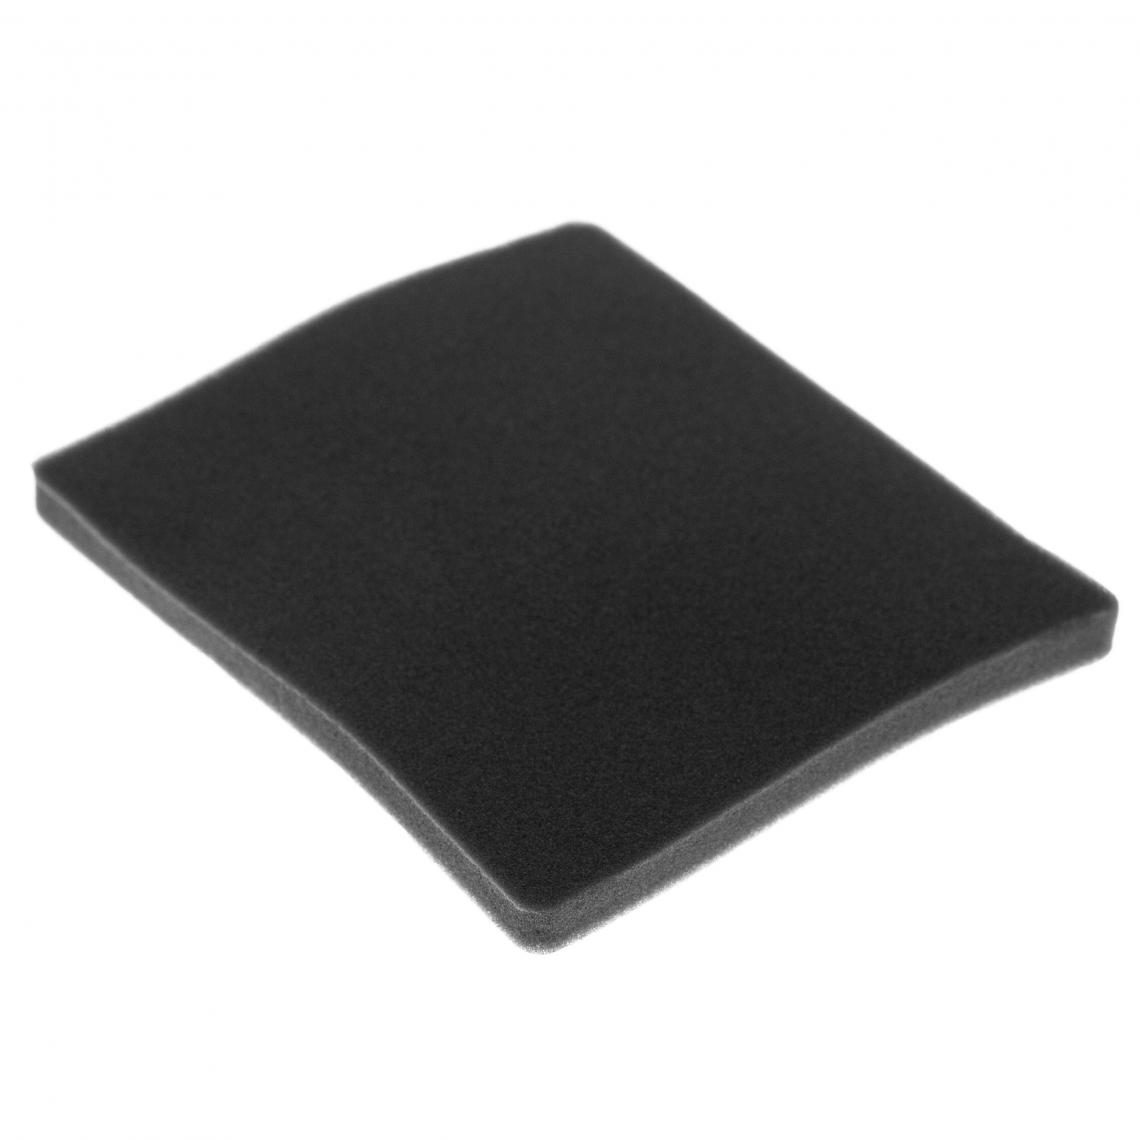 Vhbw - vhbw Filtre compatible avec Electrolux ZCX6202 (910288728) aspirateur - filtre de sortie d'air (filtre éponge), noir - Accessoire entretien des sols